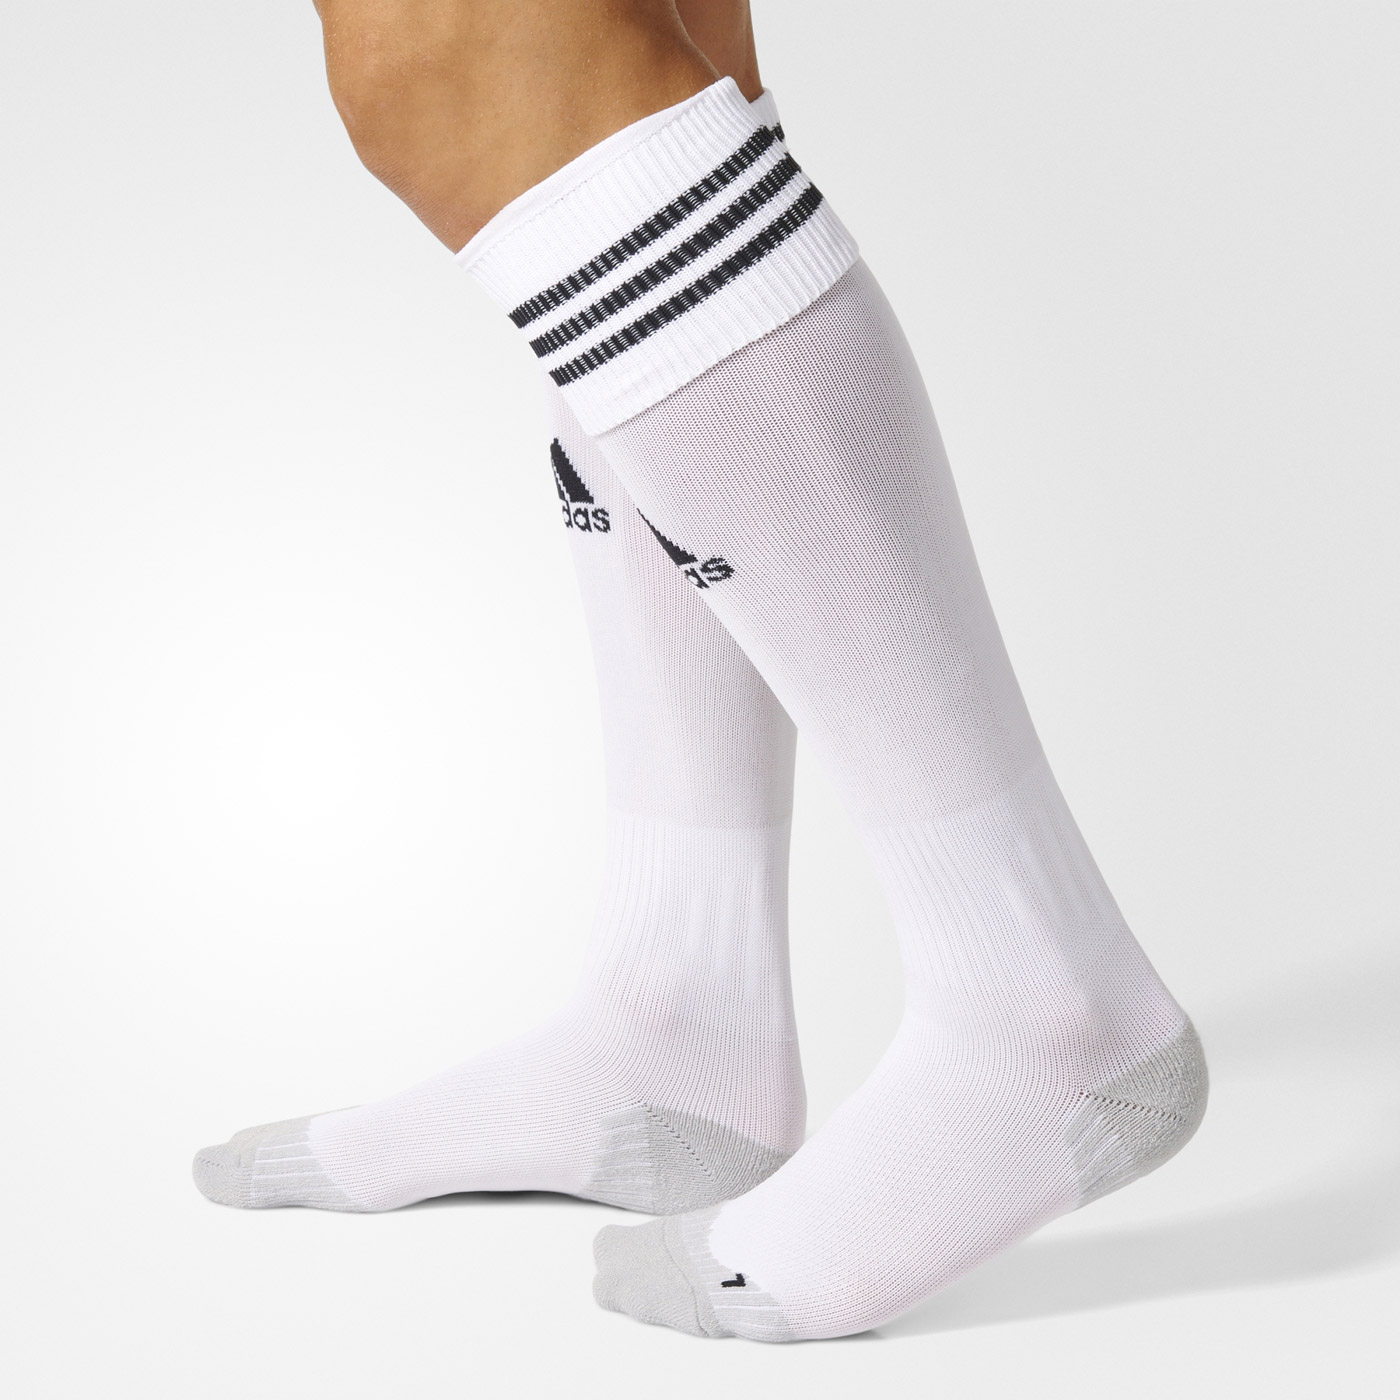 ADISOCK 12 - Football socks